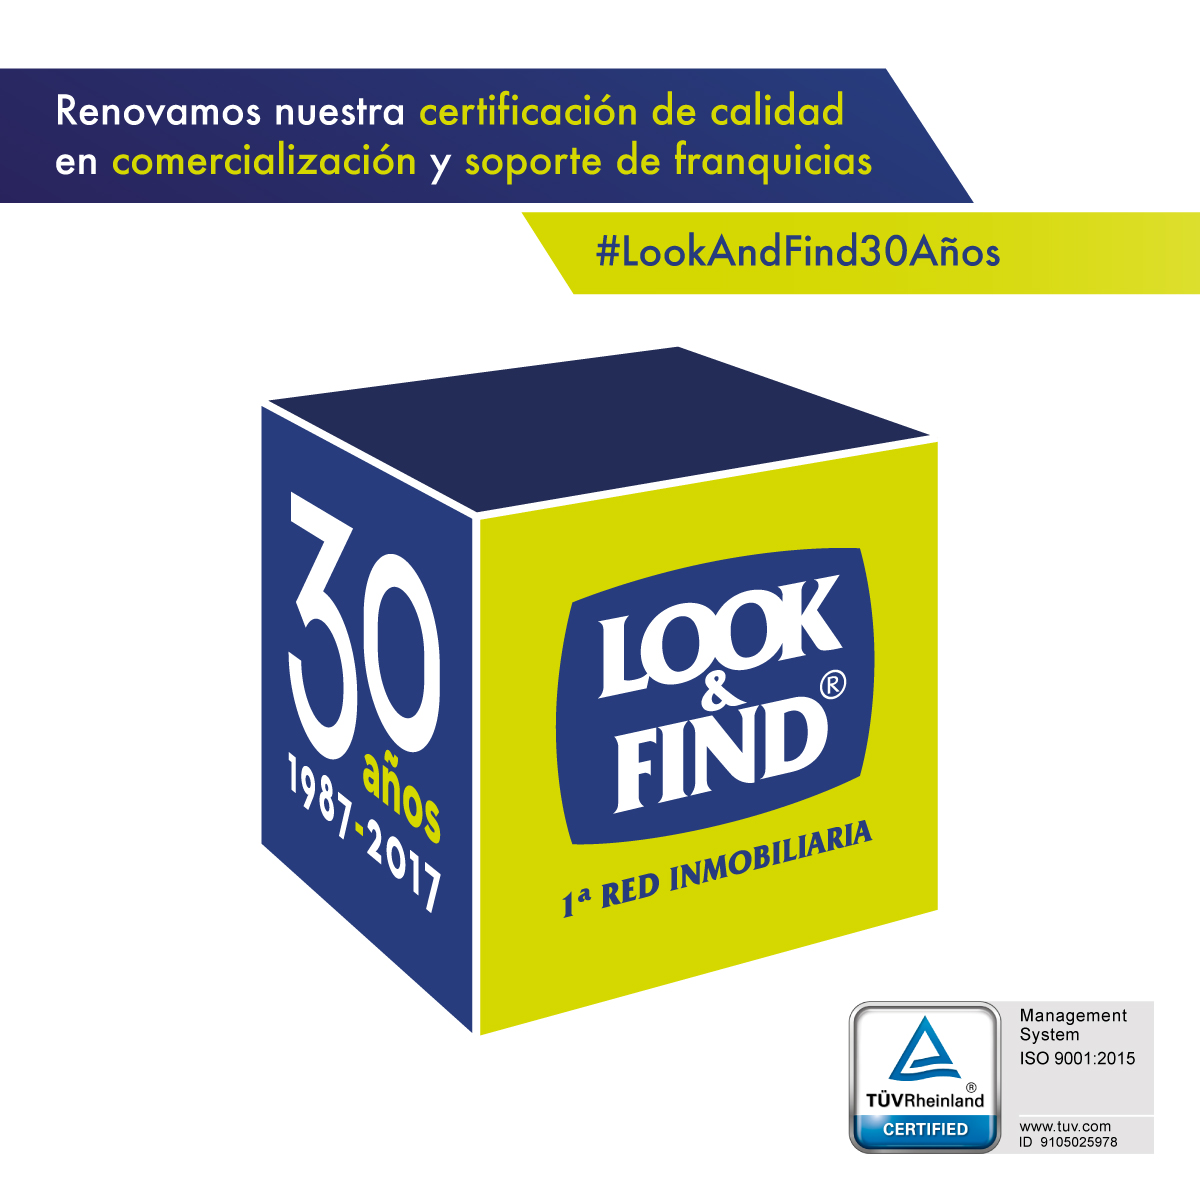 LOOK & FIND renueva su certificación de calidad en comercialización y soporte de franquicias